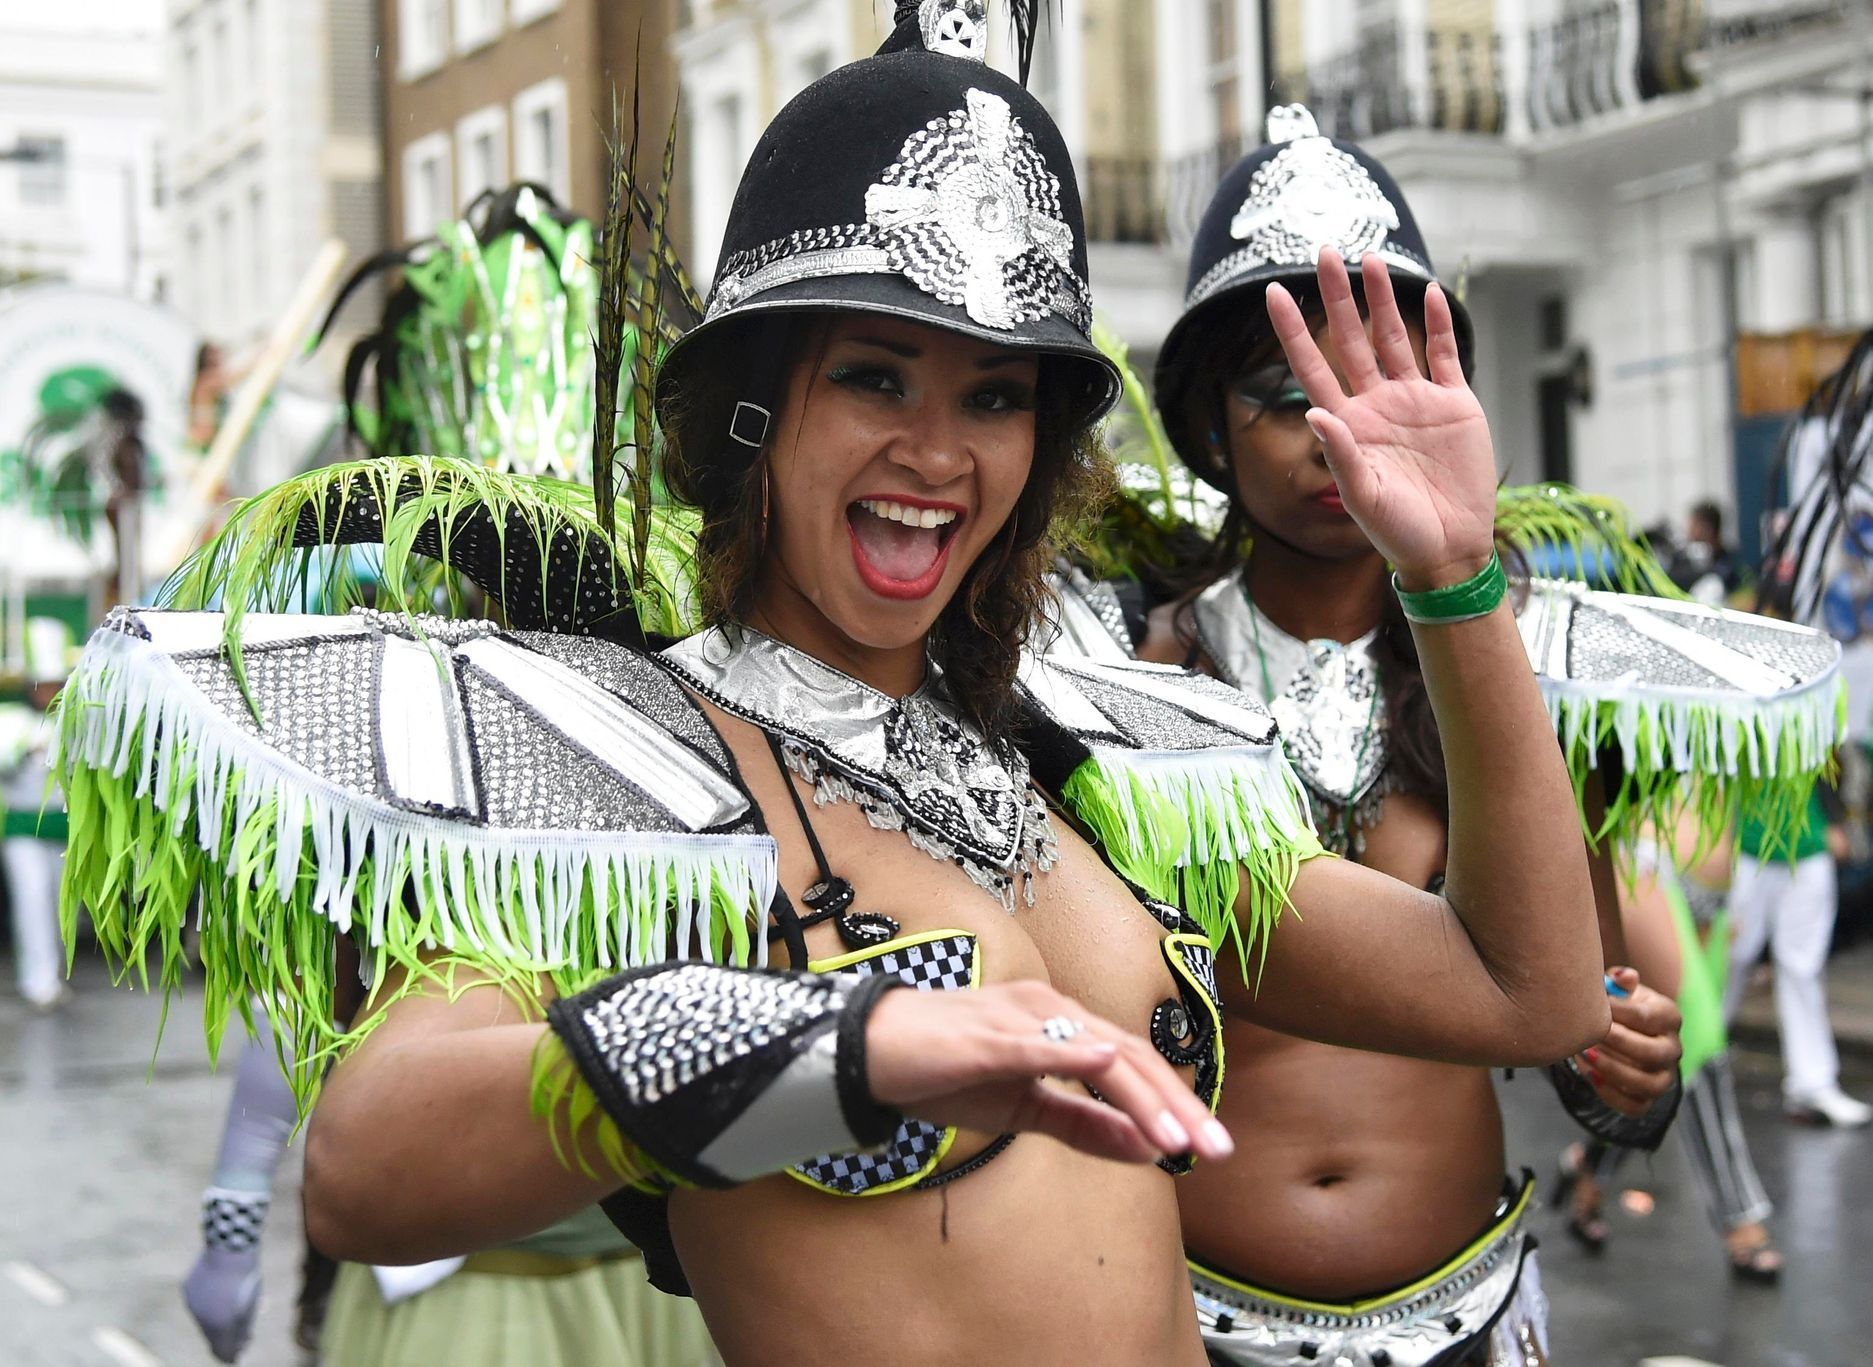 Karneval v londýnském Notting Hillu